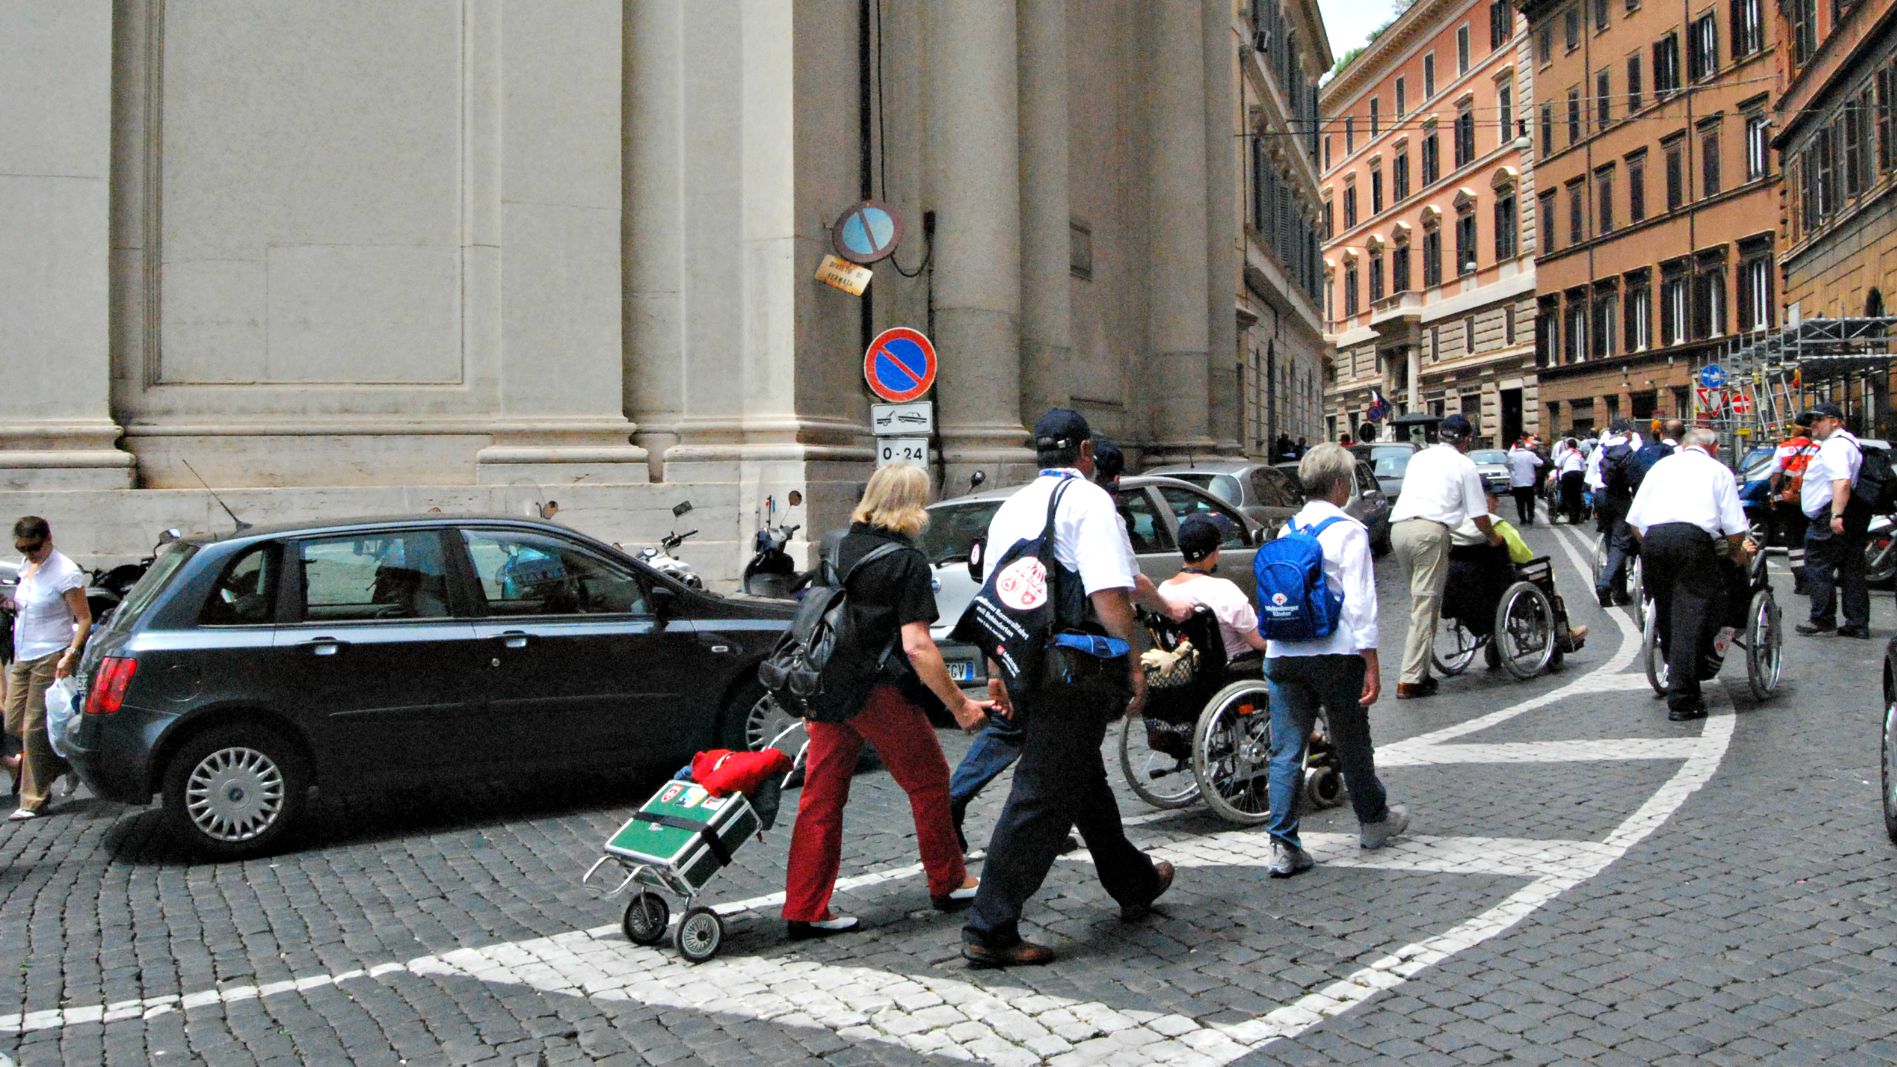 Le pèlerins sont encore peu nombreux à Rome (Photo d'illustration:Jim Forest/Flickr/CC BY-NC-ND 2.0)